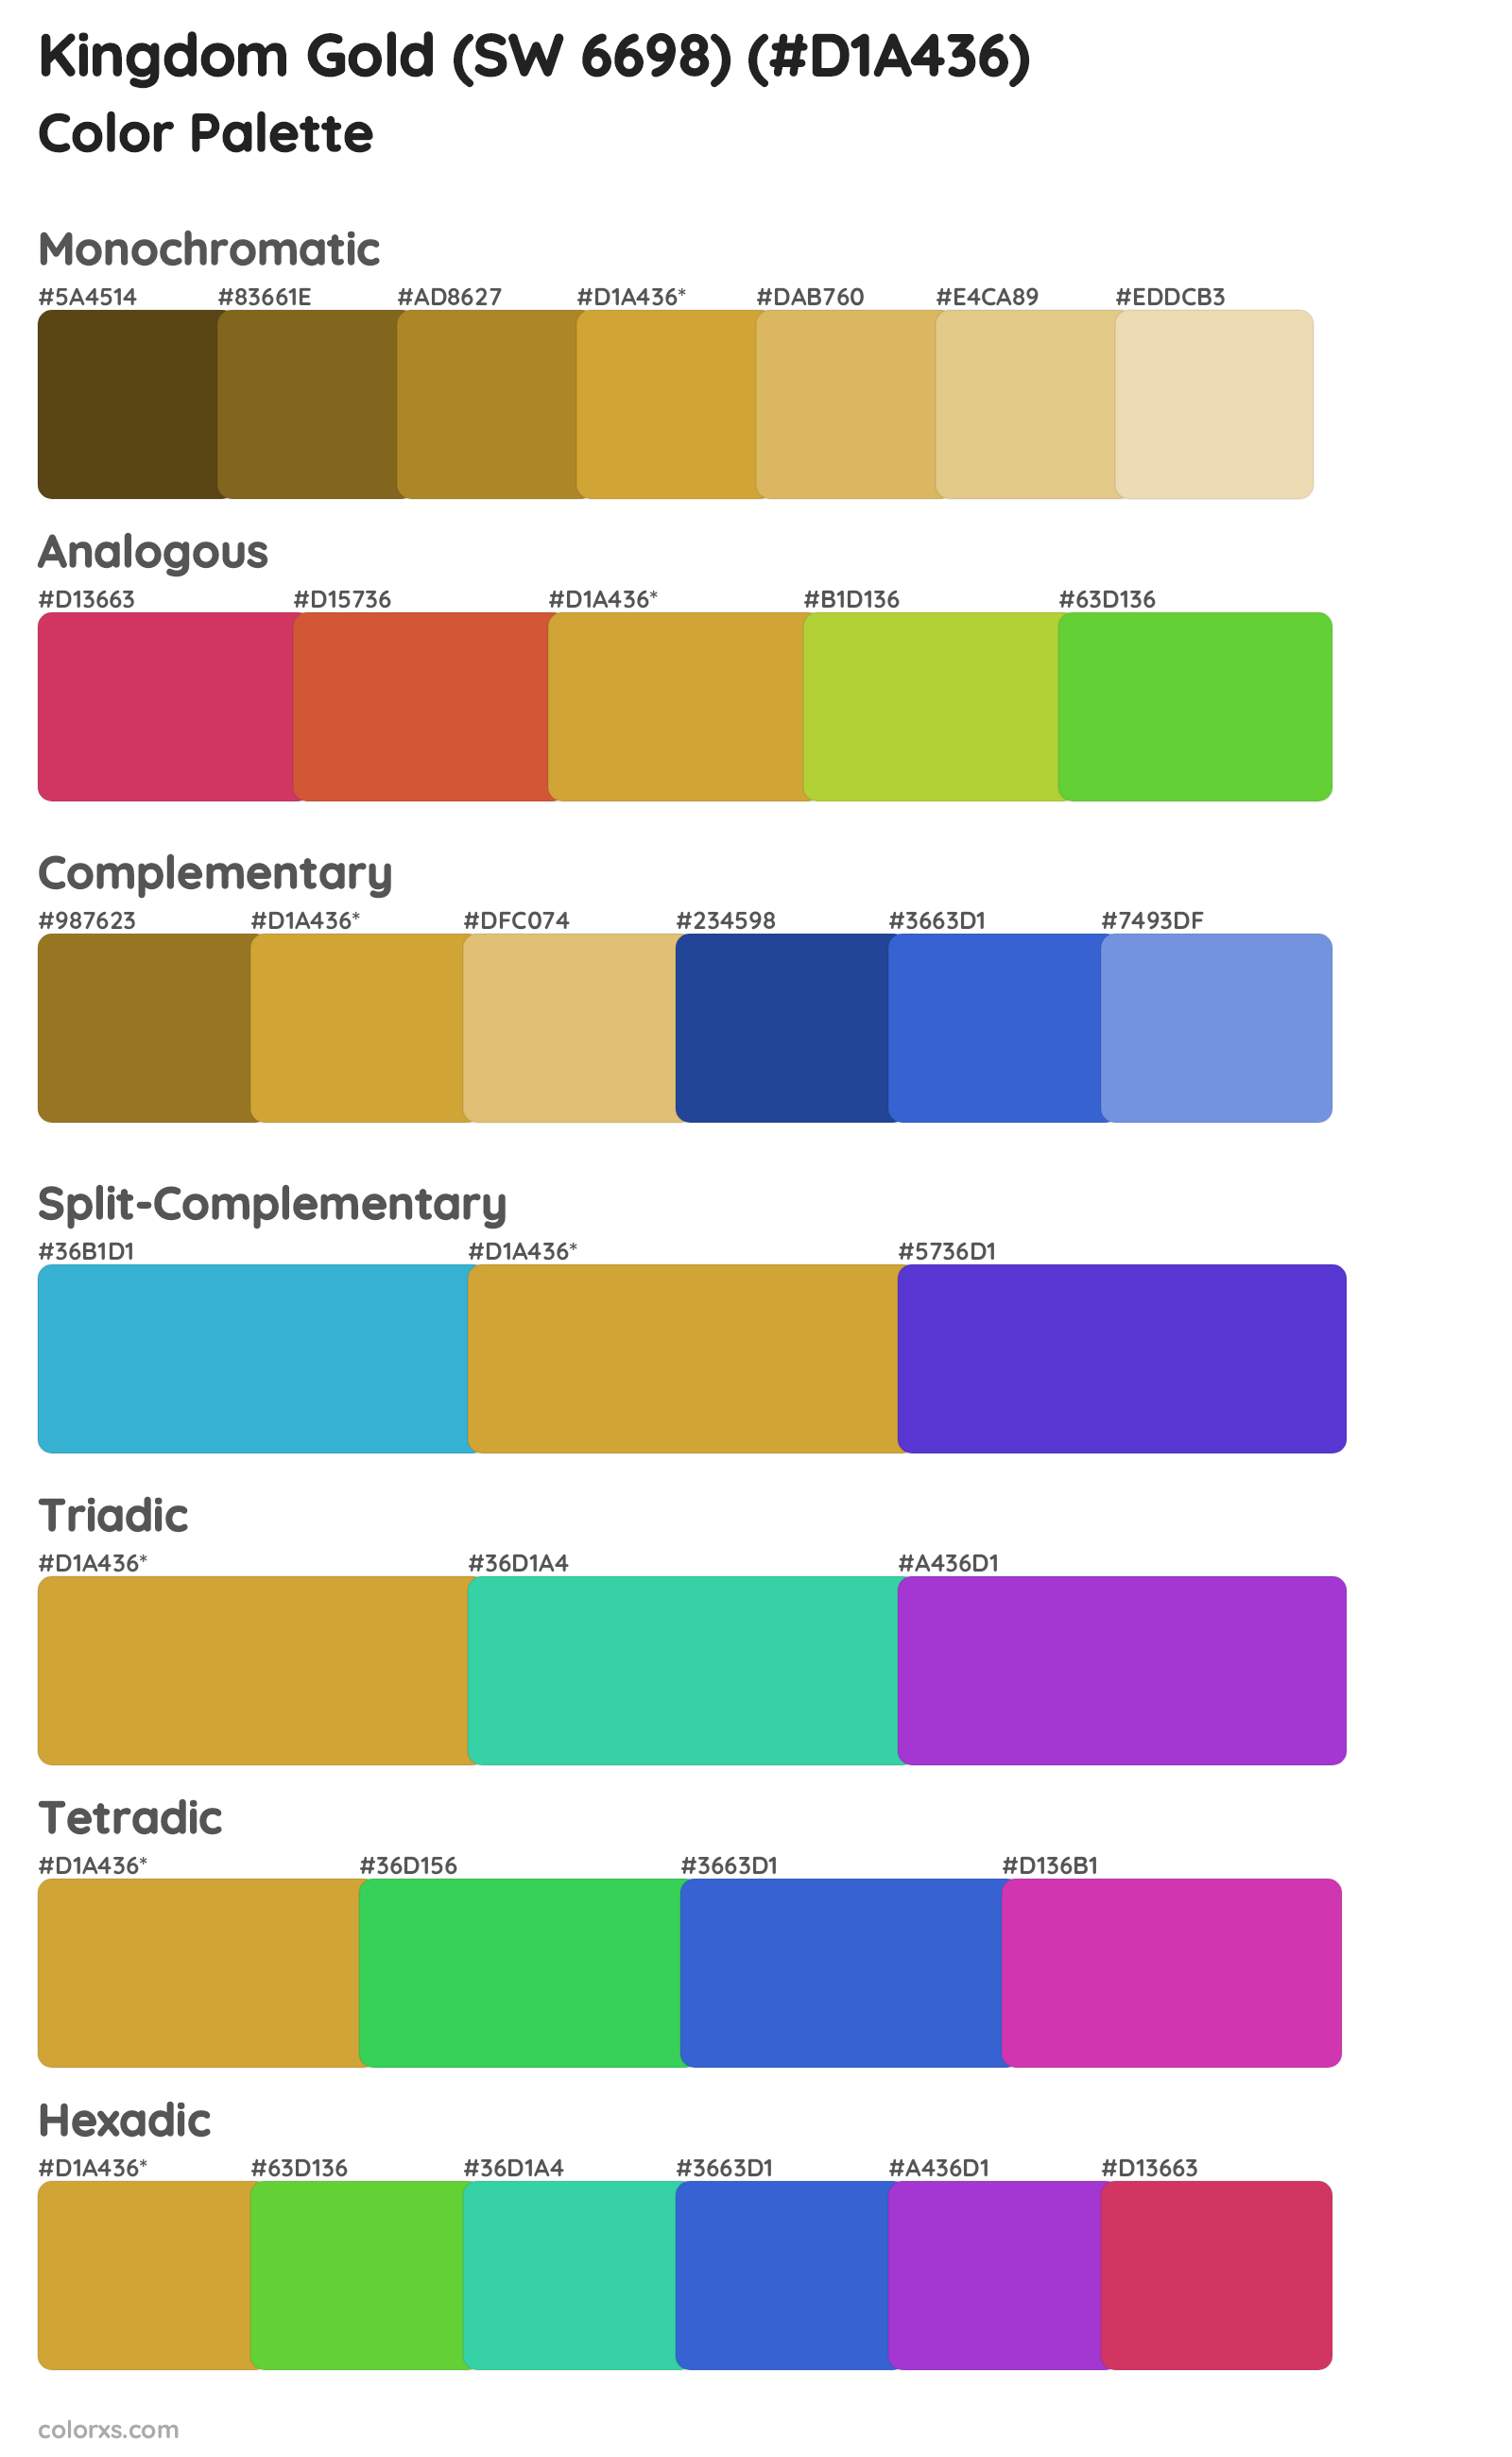 Kingdom Gold (SW 6698) Color Scheme Palettes